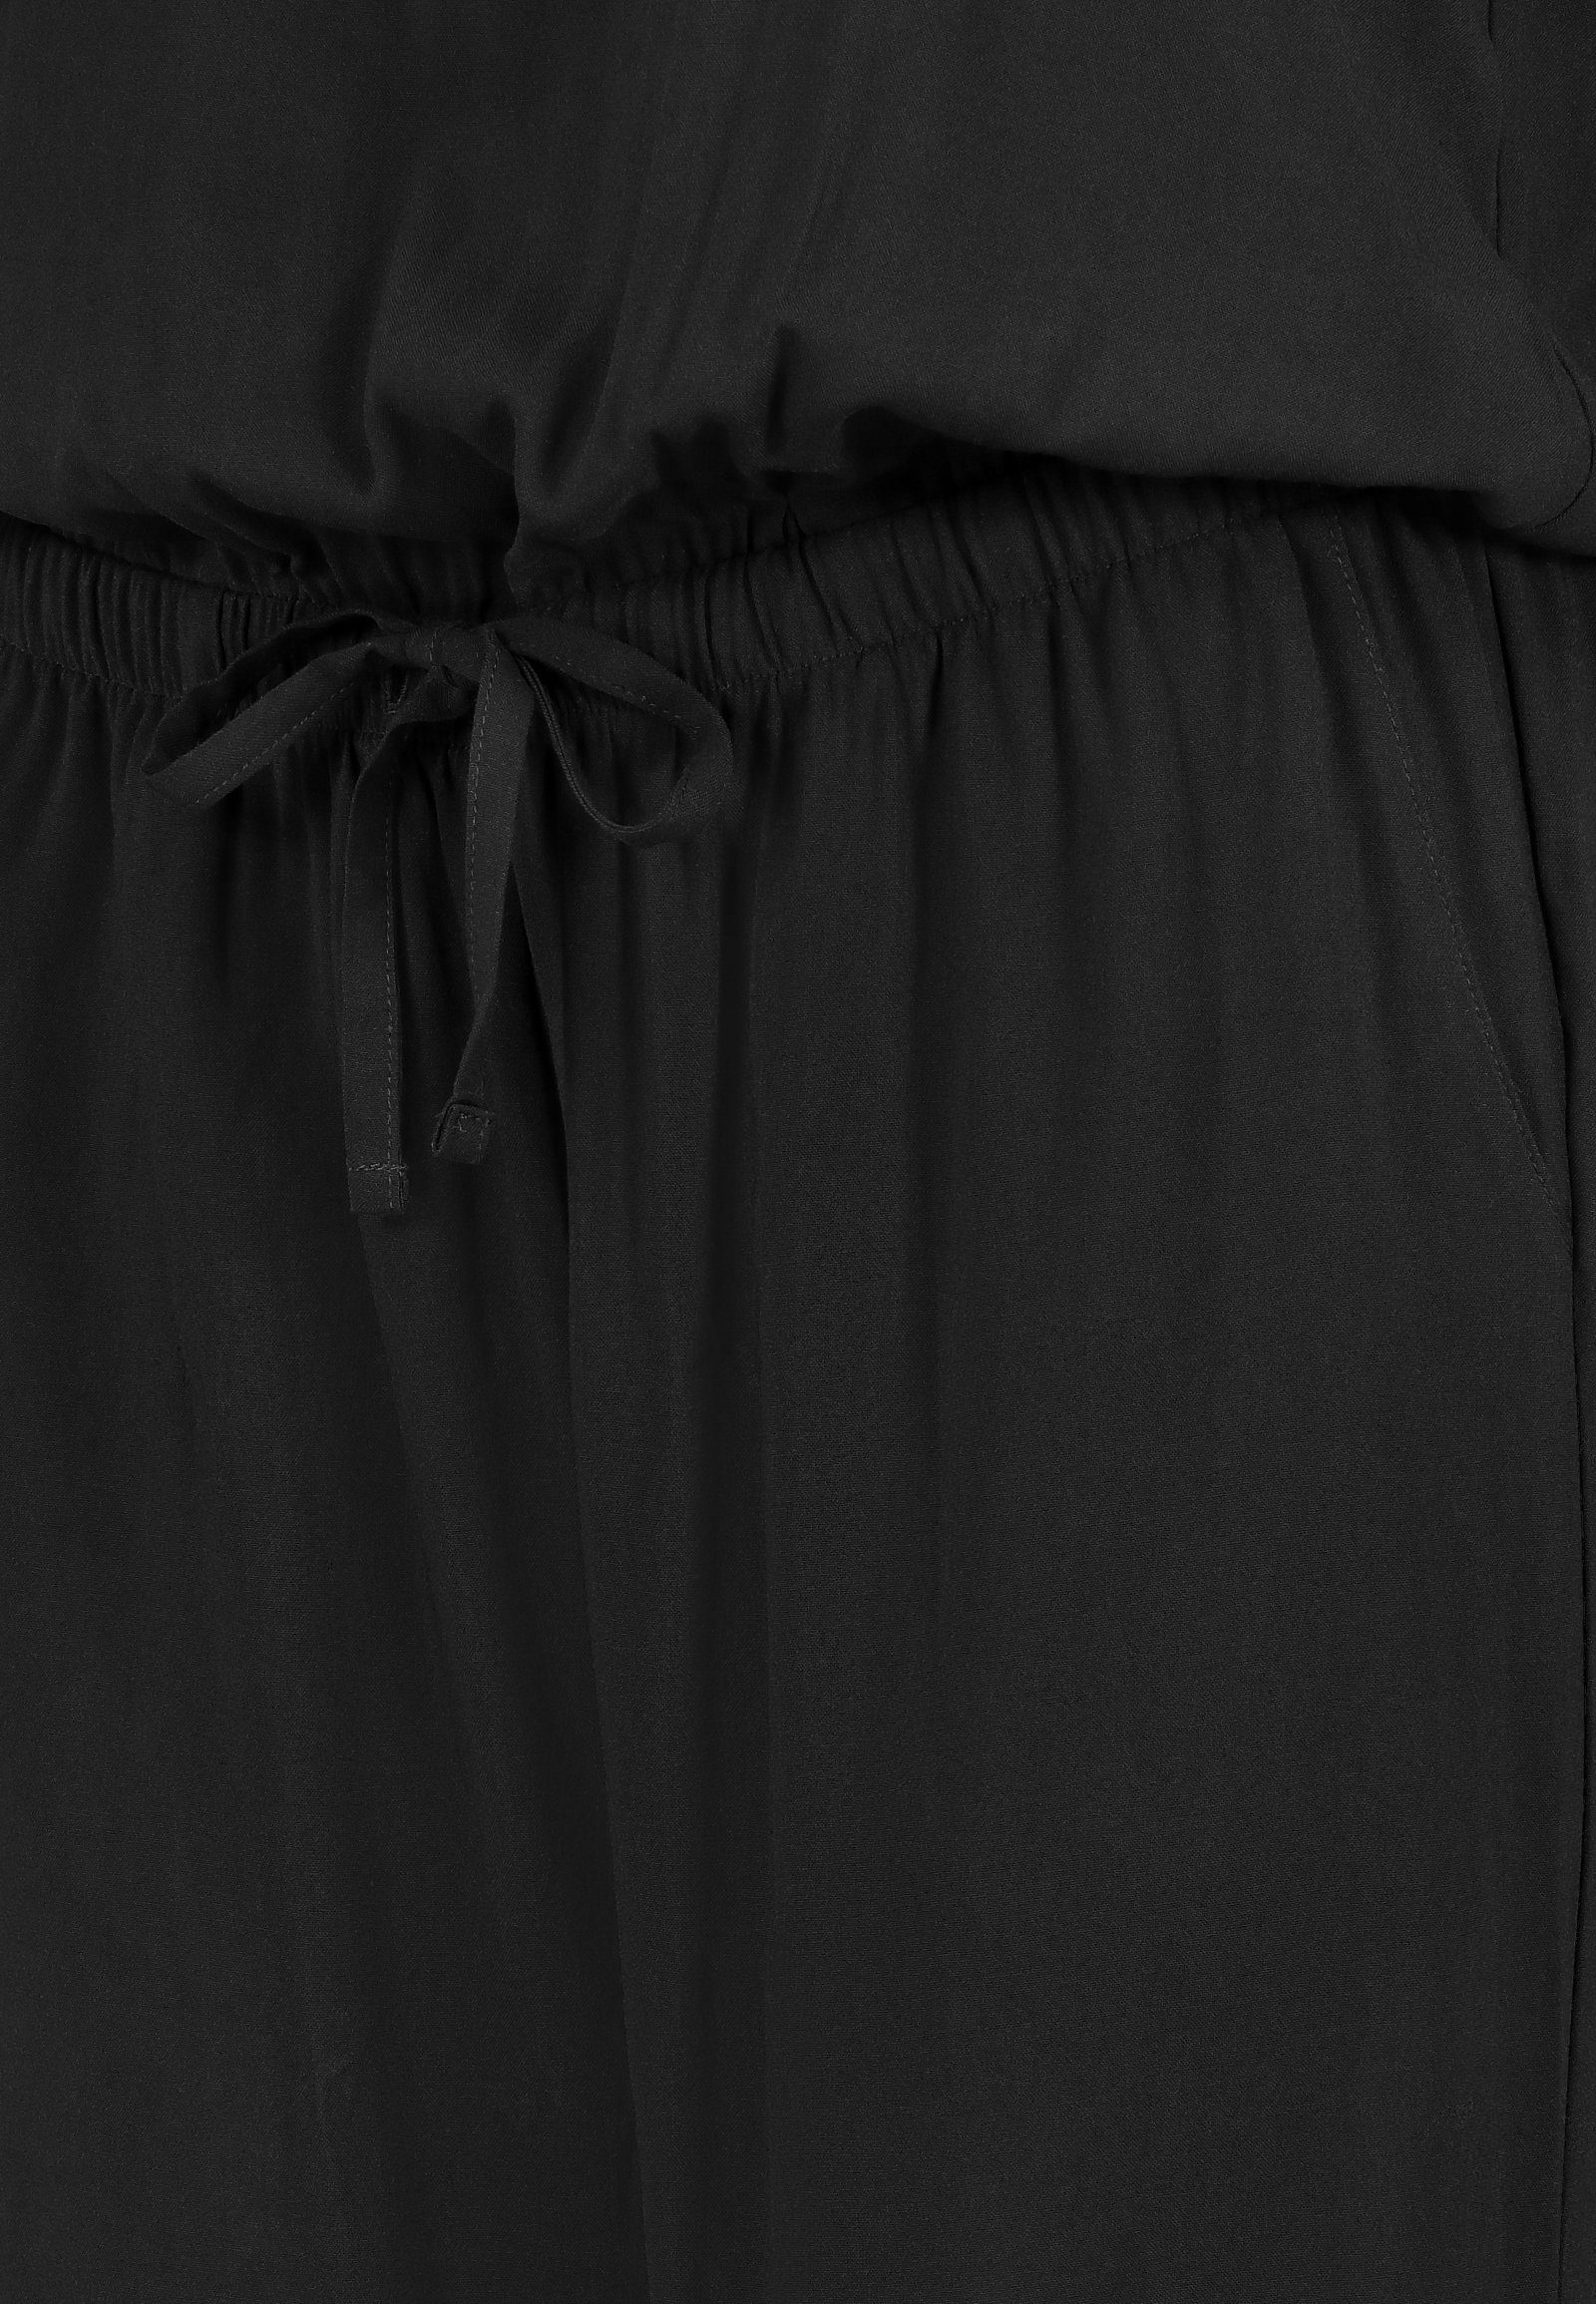 Einteiler Overall Gürtel Damen SUBLEVEL lange Schwarz Sommer Binde Hose Overall Jumpsuit